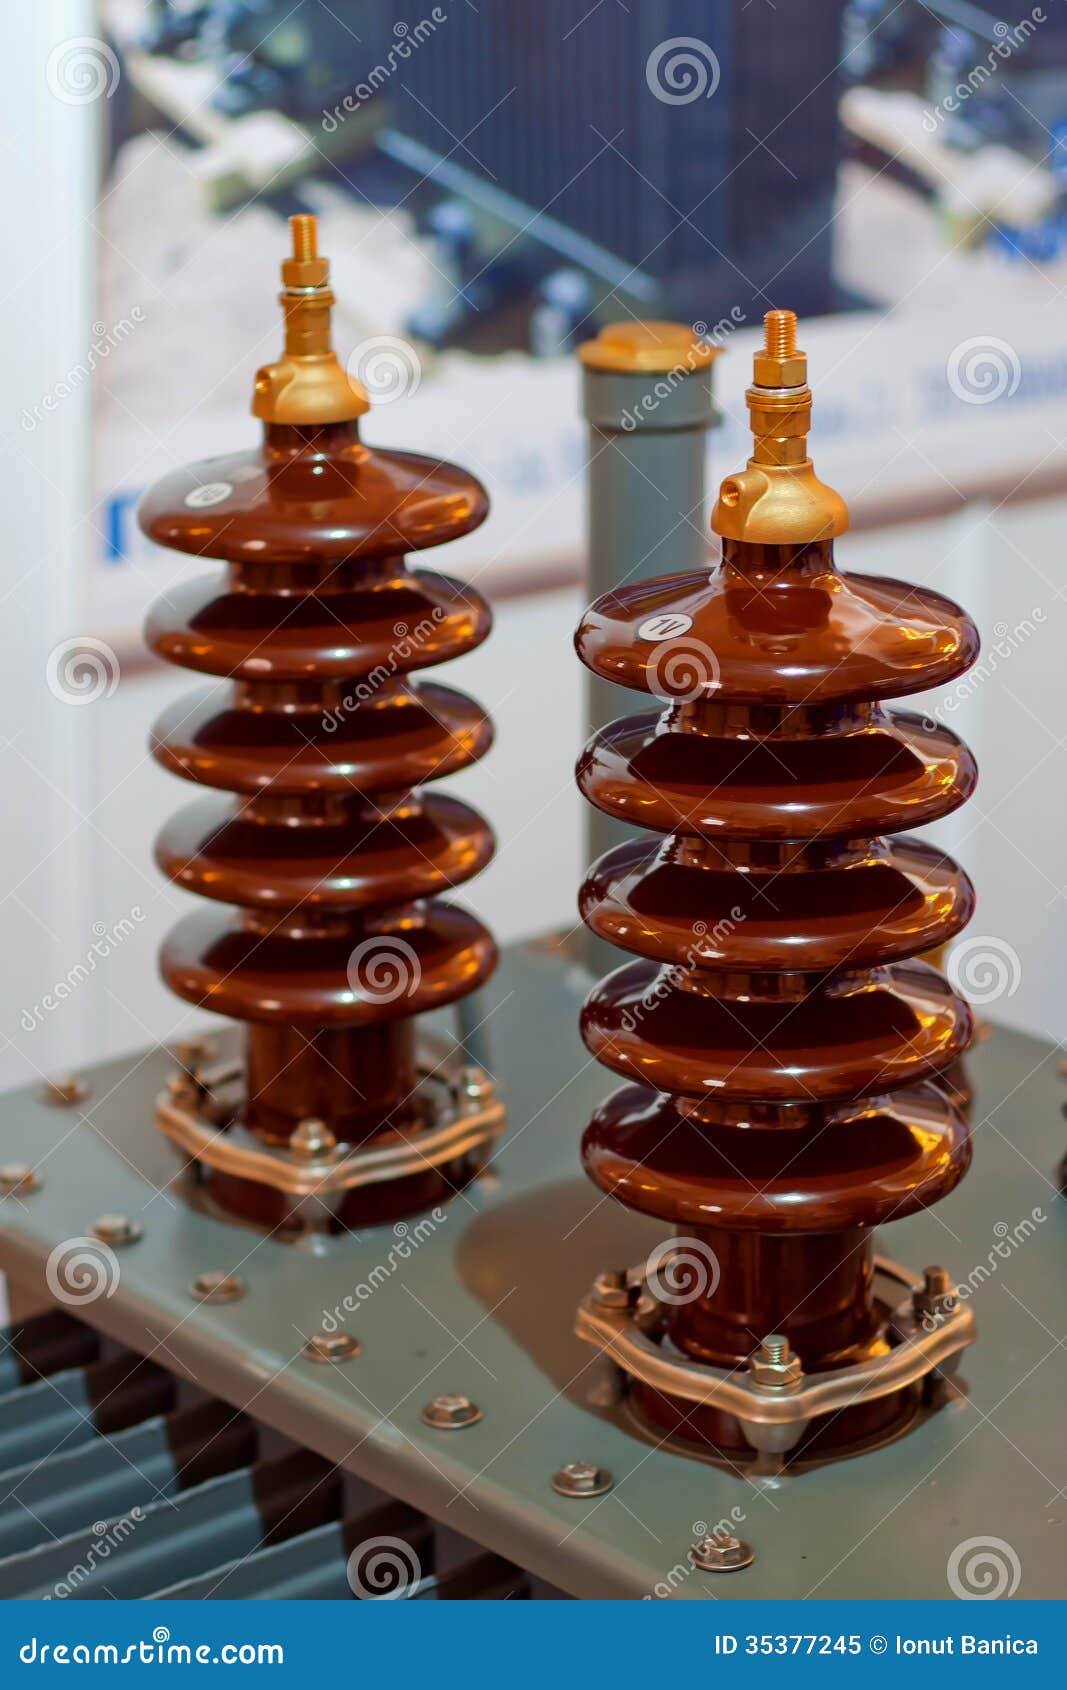 Medium Voltage insulators stock image. Image of dielectric - 35377245